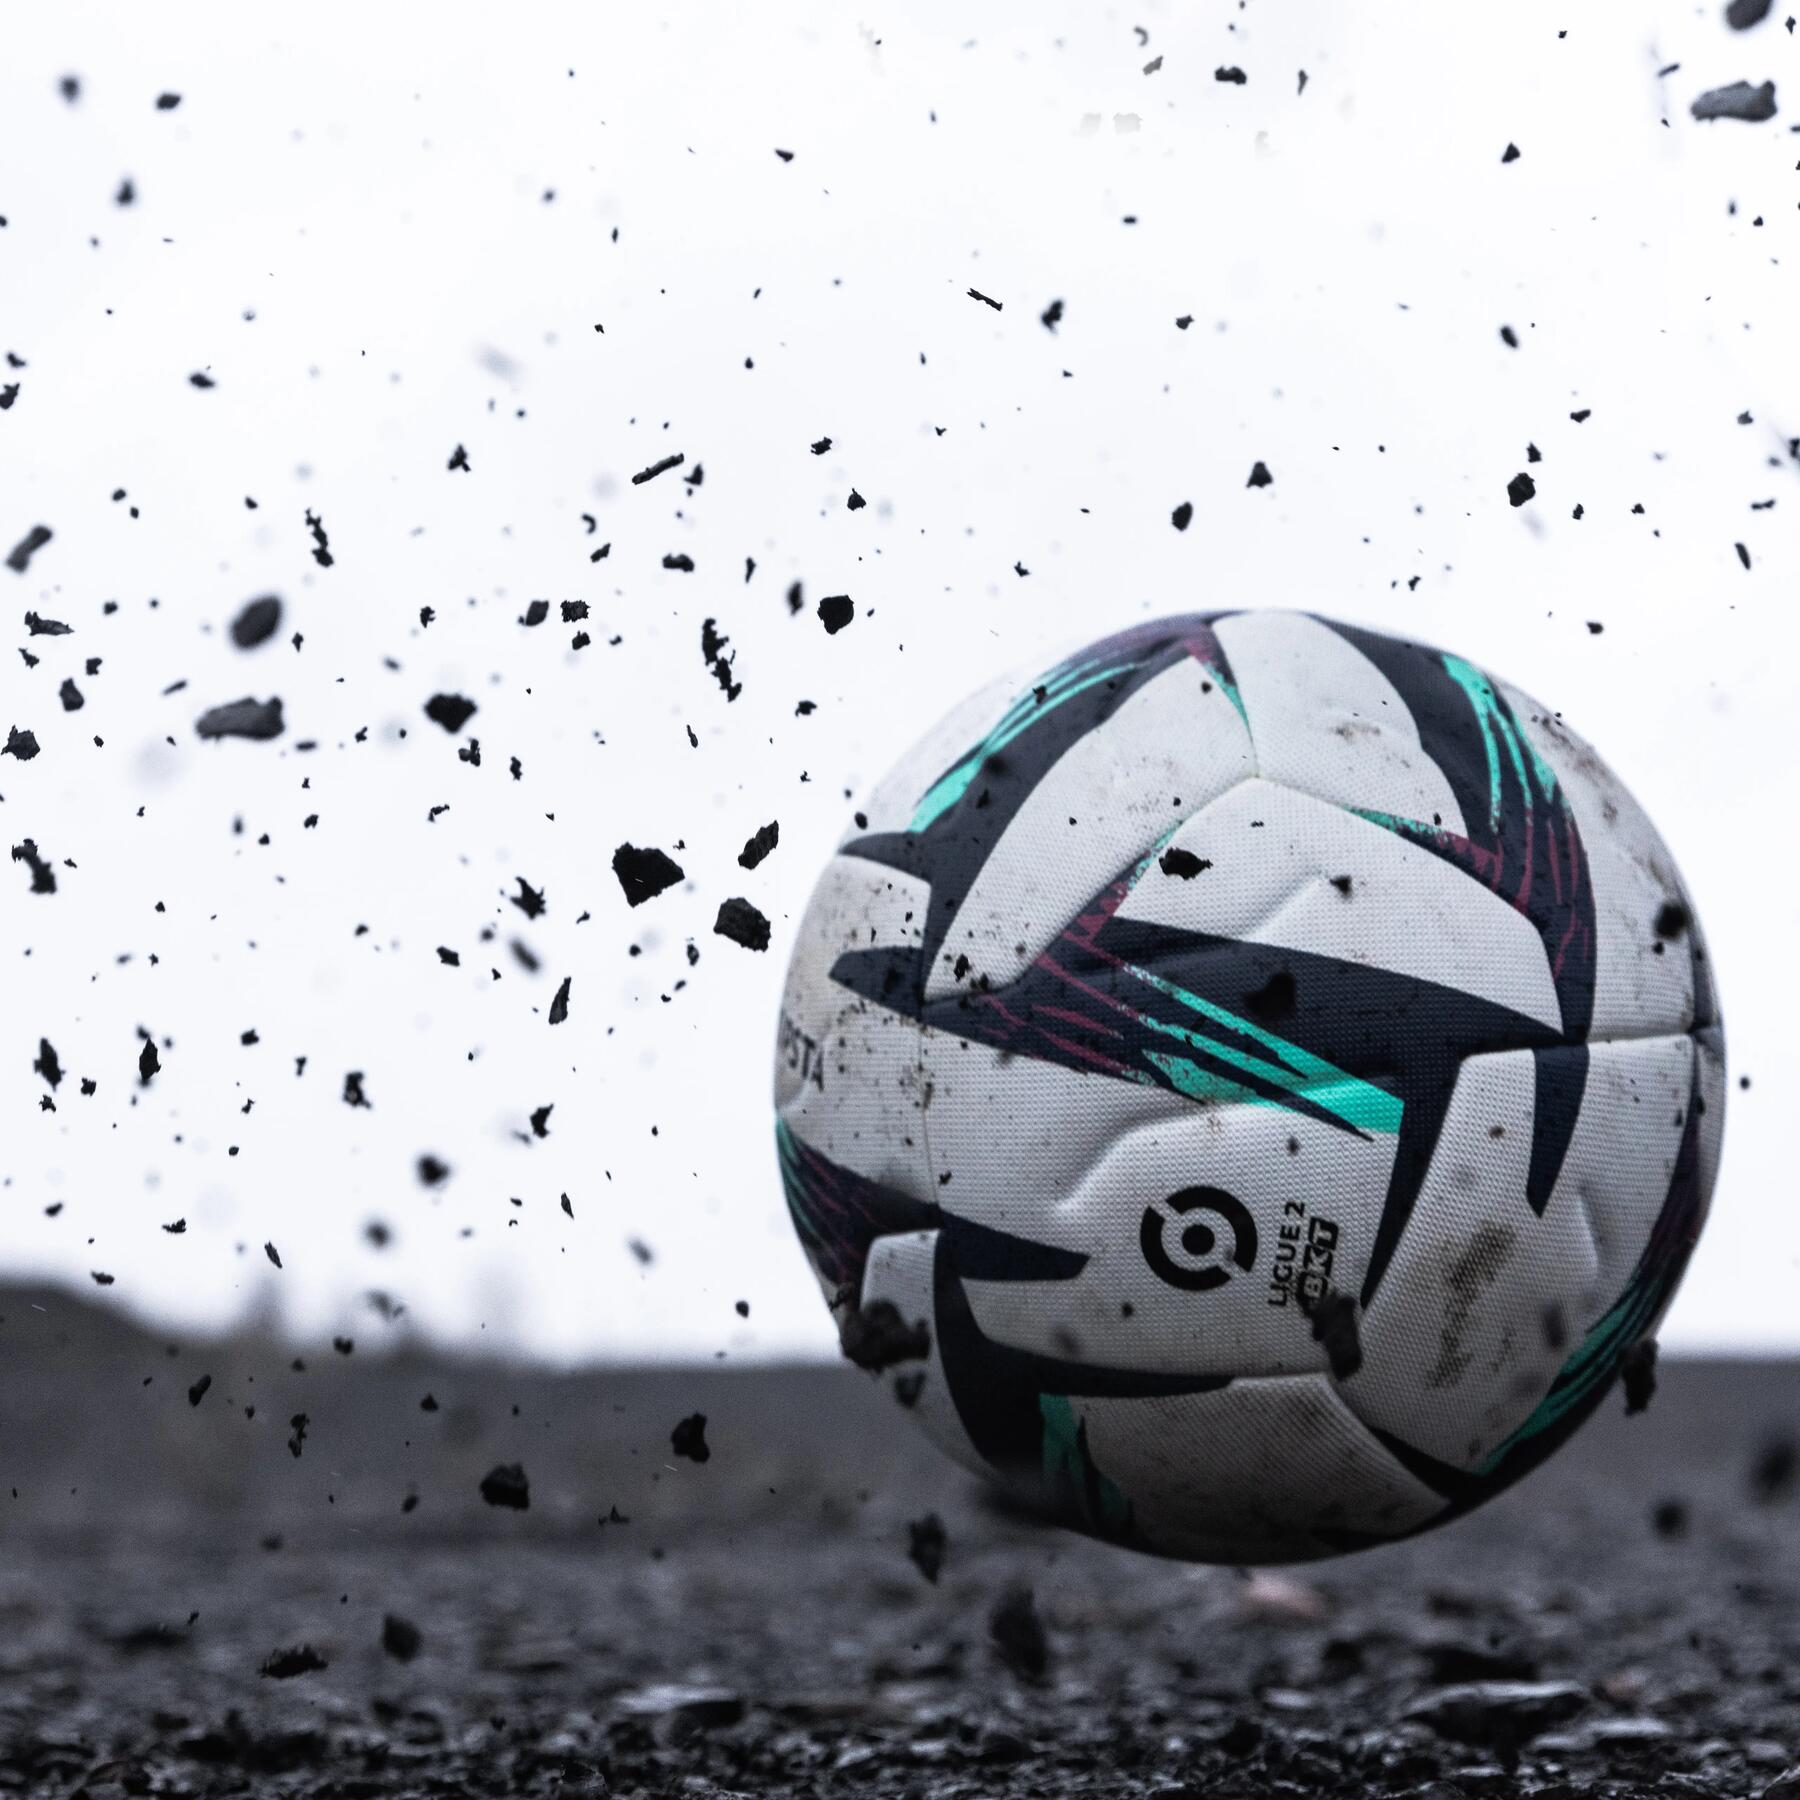 Piłka do piłki nożnej odbijająca się od ziemi